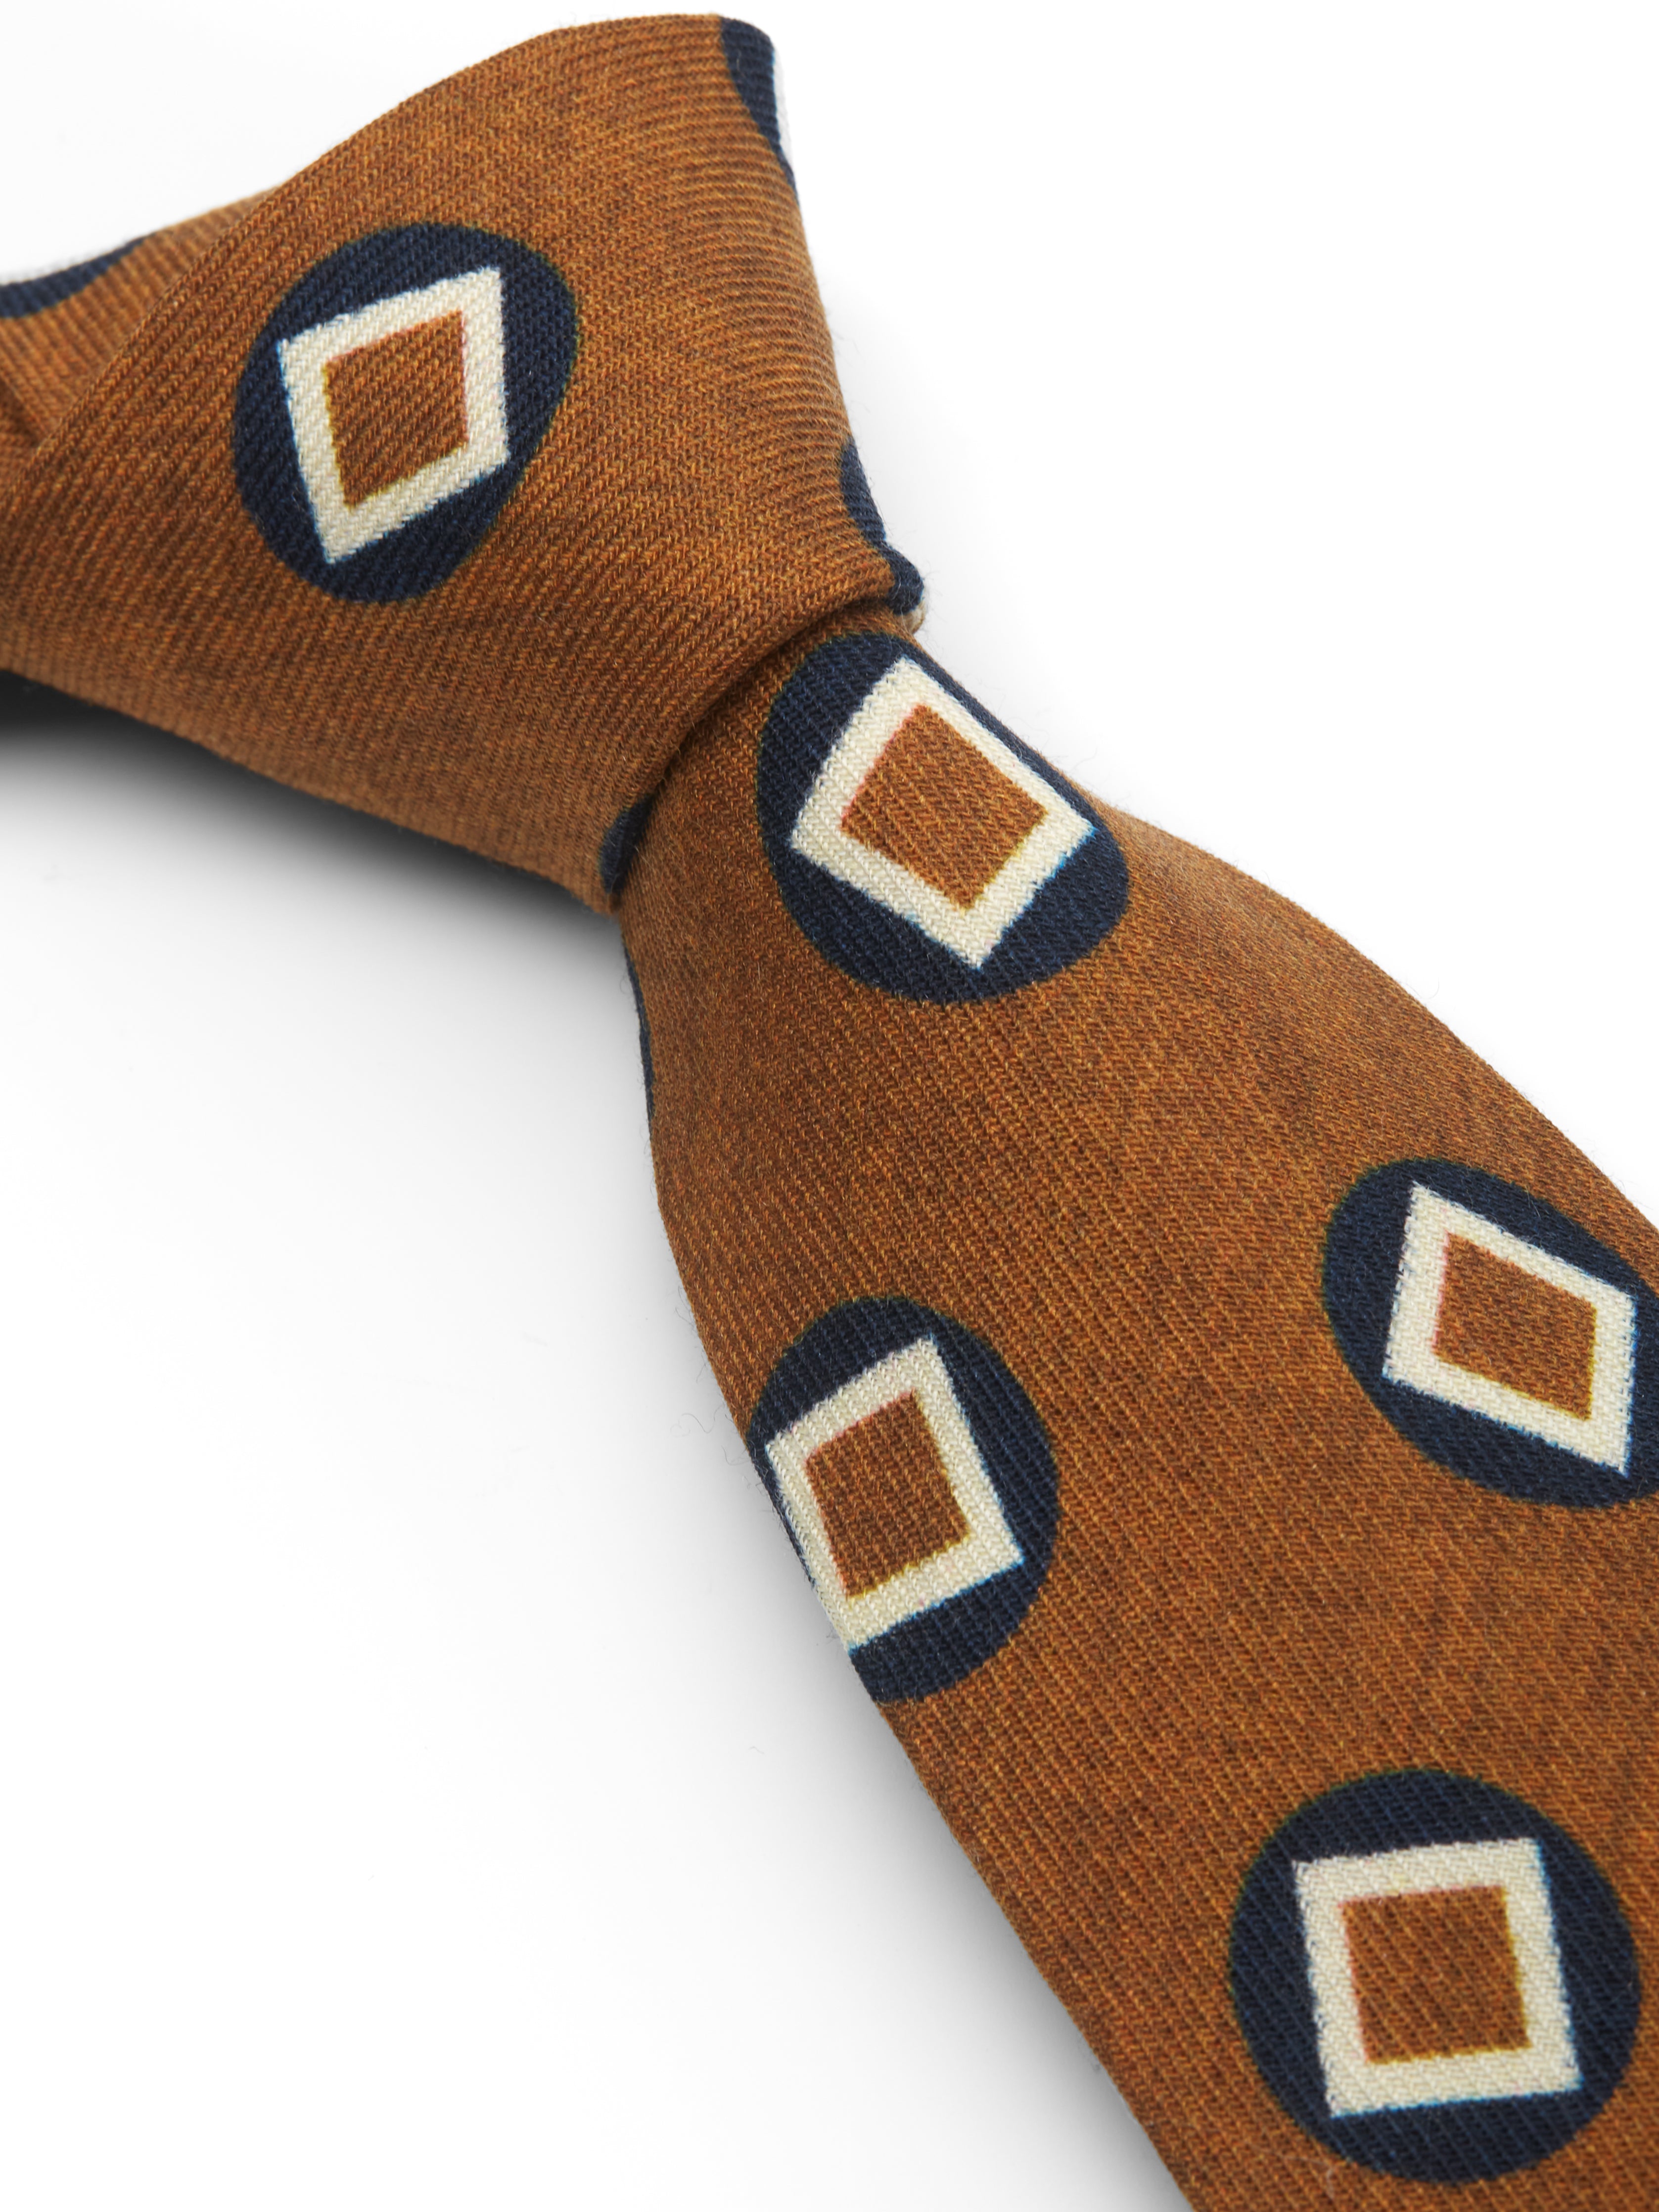 Copper Clivedon Silk Tie